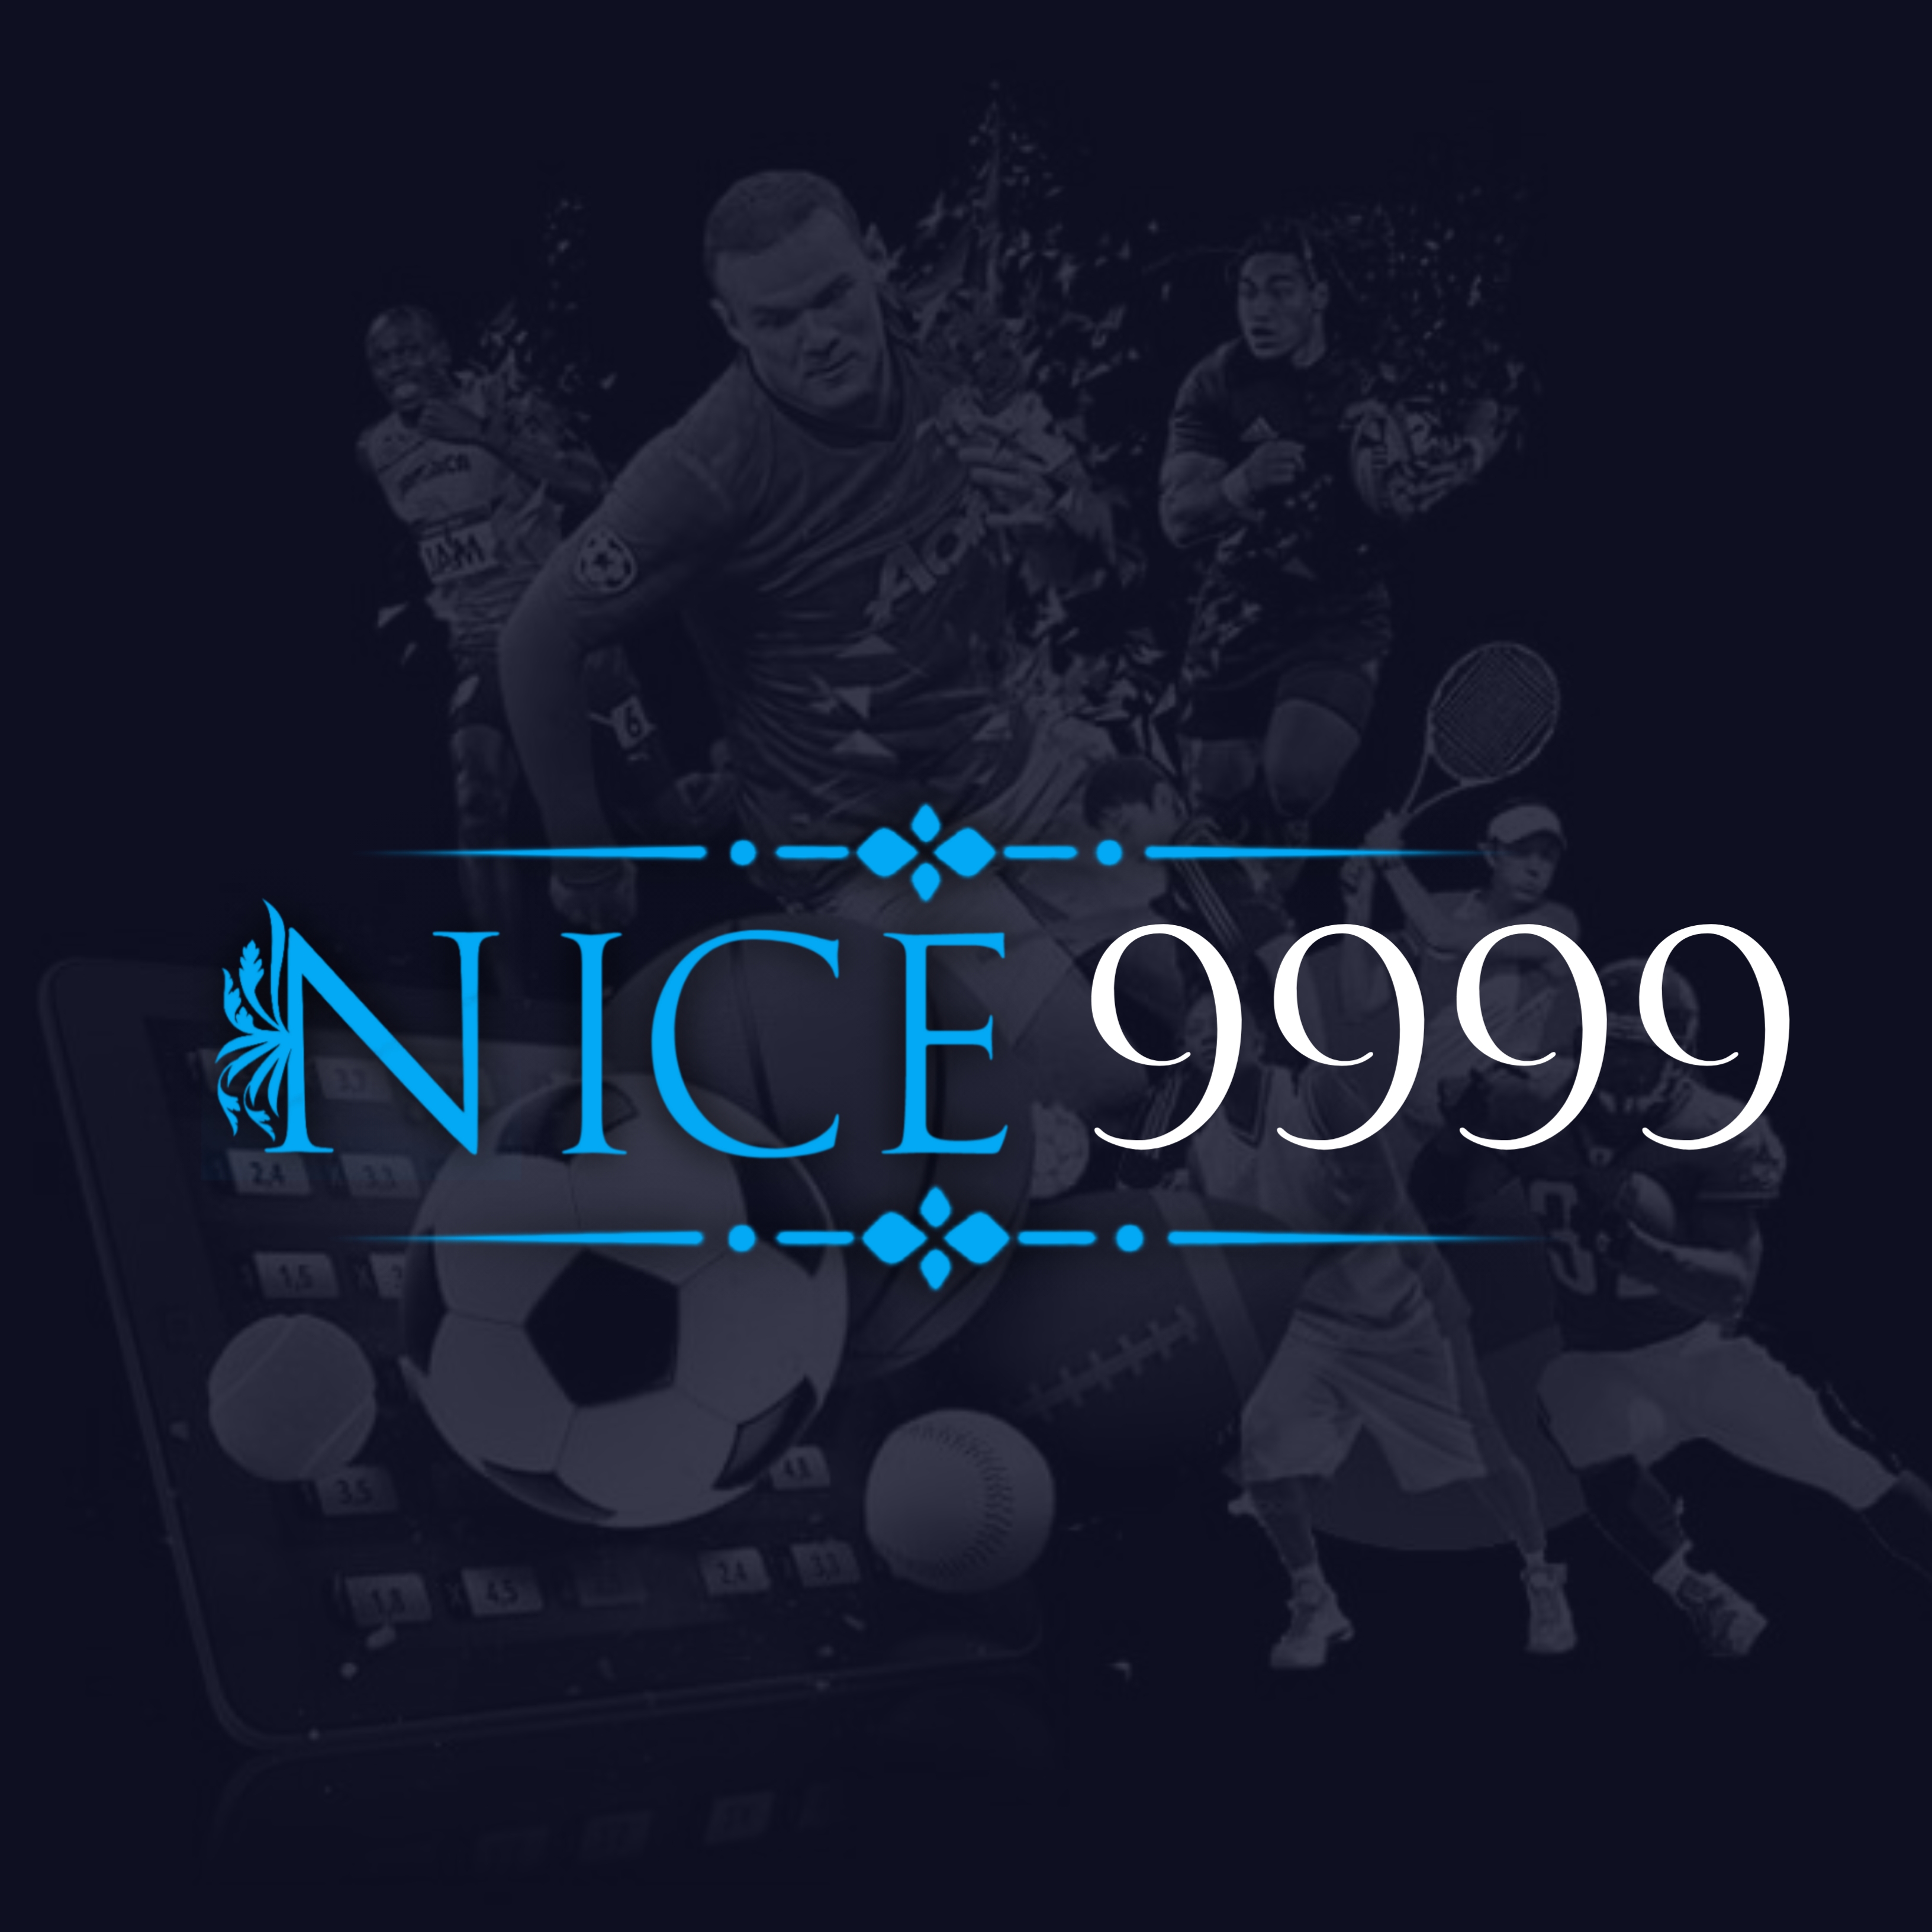 Nice 9999